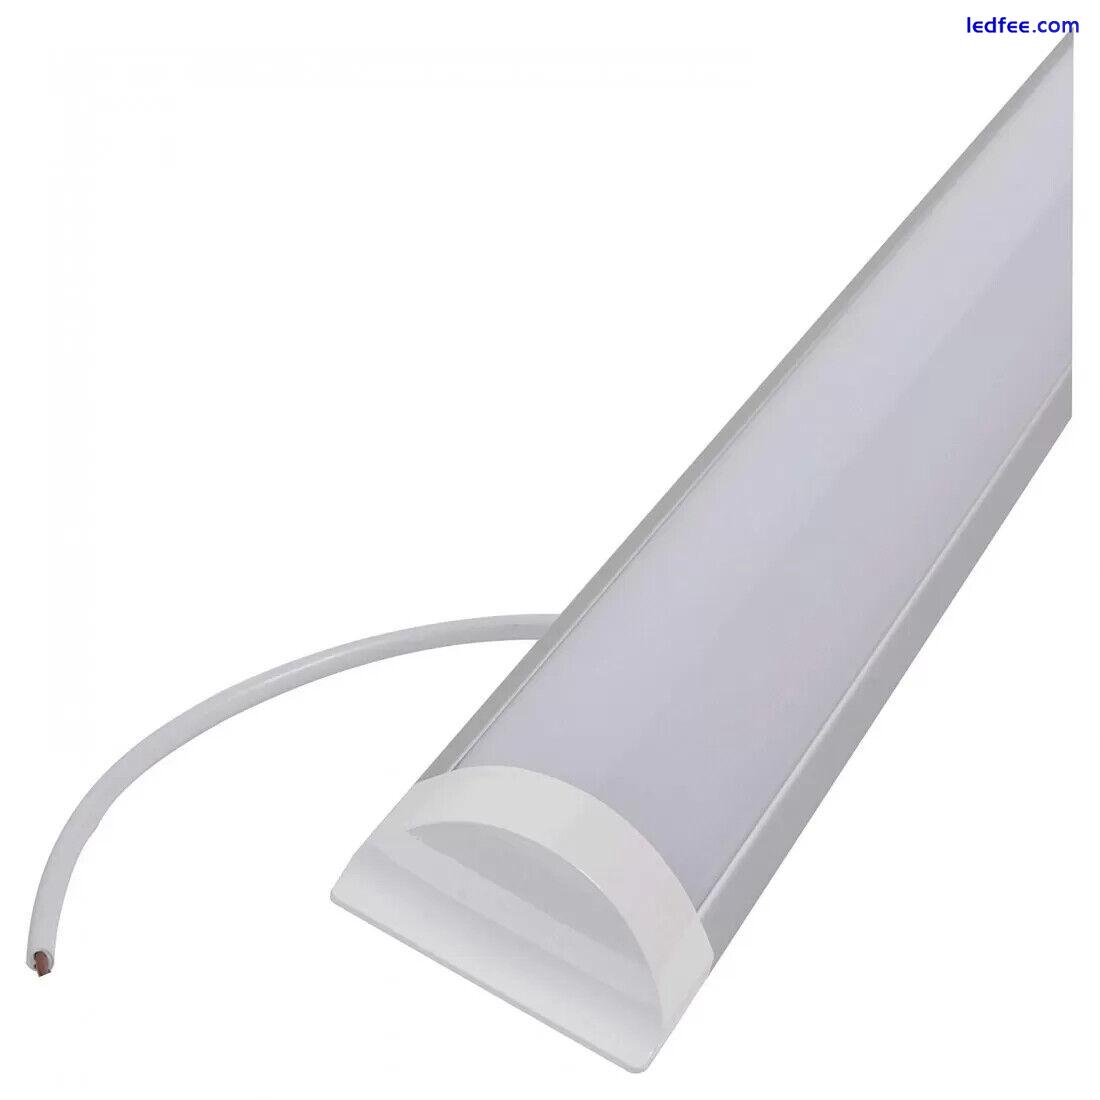 LED Batten Light 18W 2FT 60CM Flat Tube Slimline Daylight 6500k Ceiling Lamp 3 